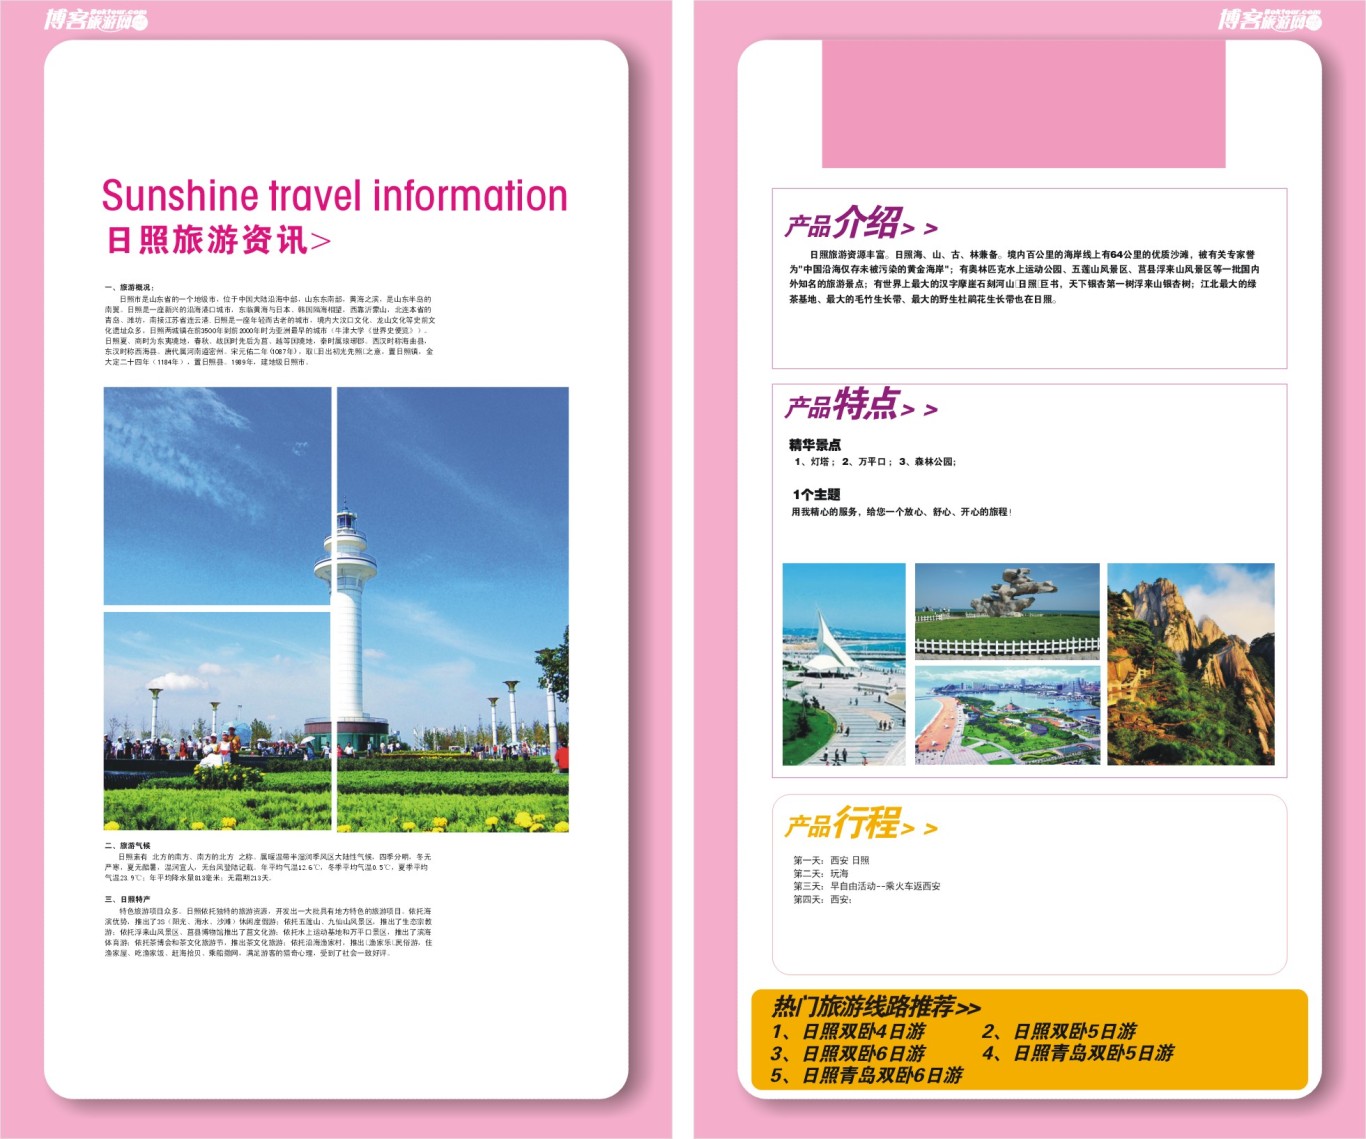 博客旅游网宣传手册设计图18